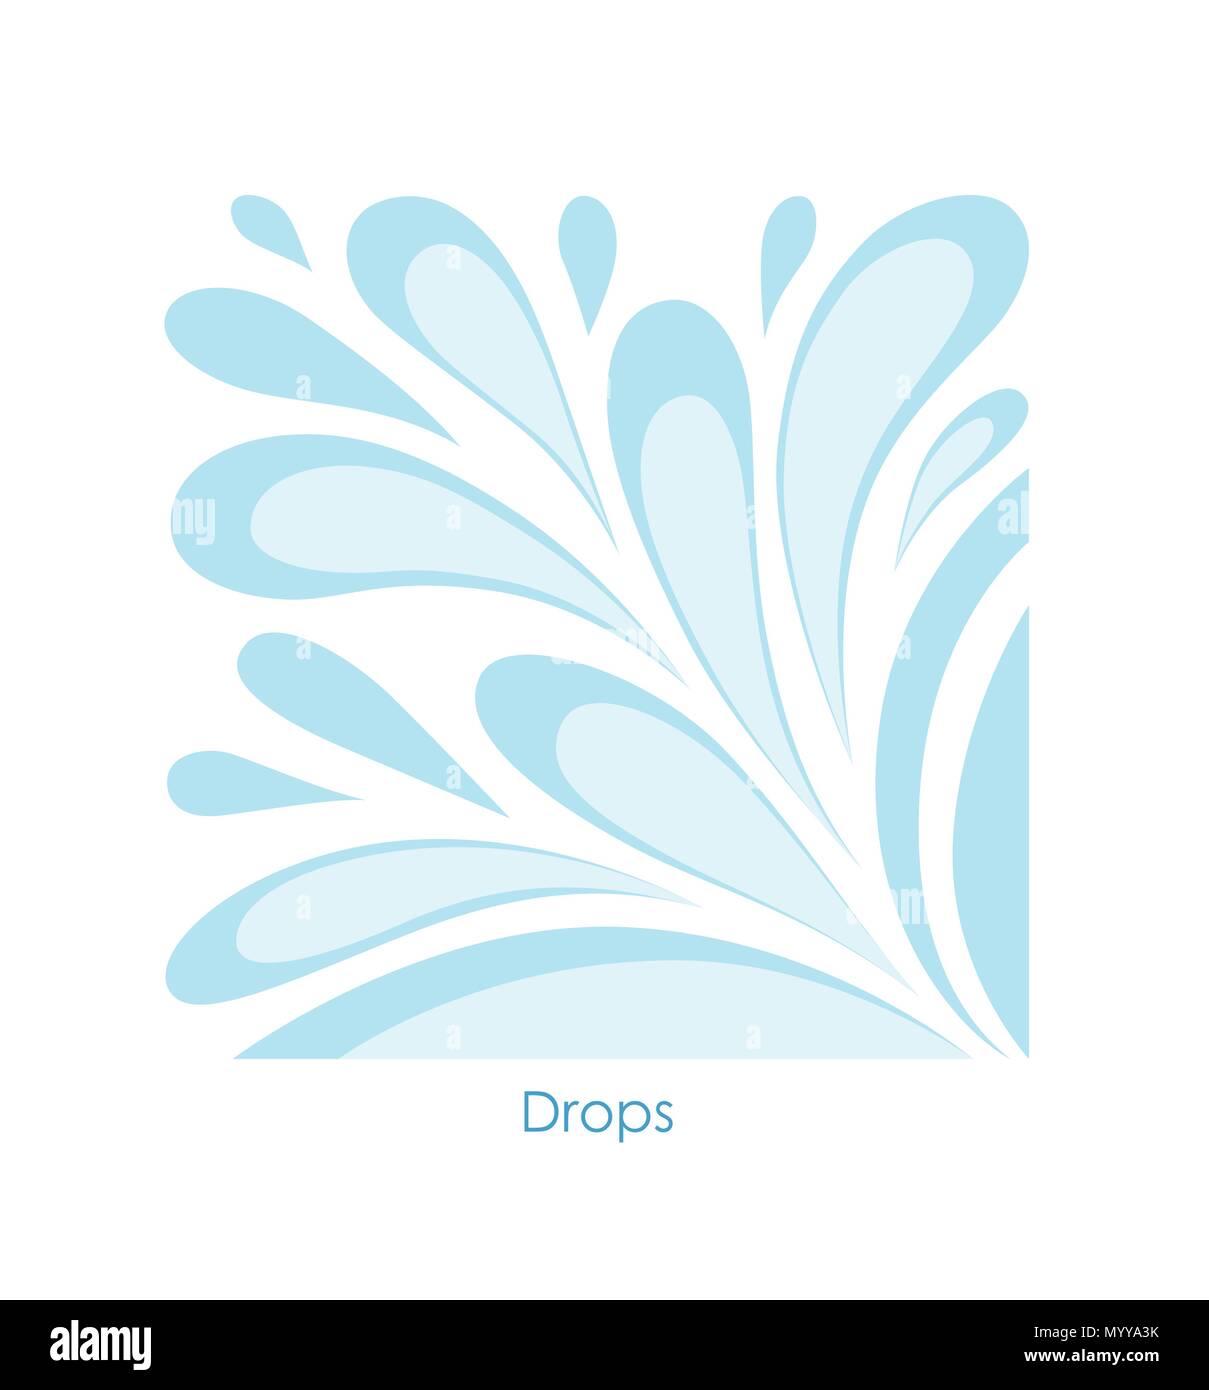 Goccia di acqua su sfondo bianco. Immagine stilizzata di gocce inscritto in un quadrato Illustrazione Vettoriale